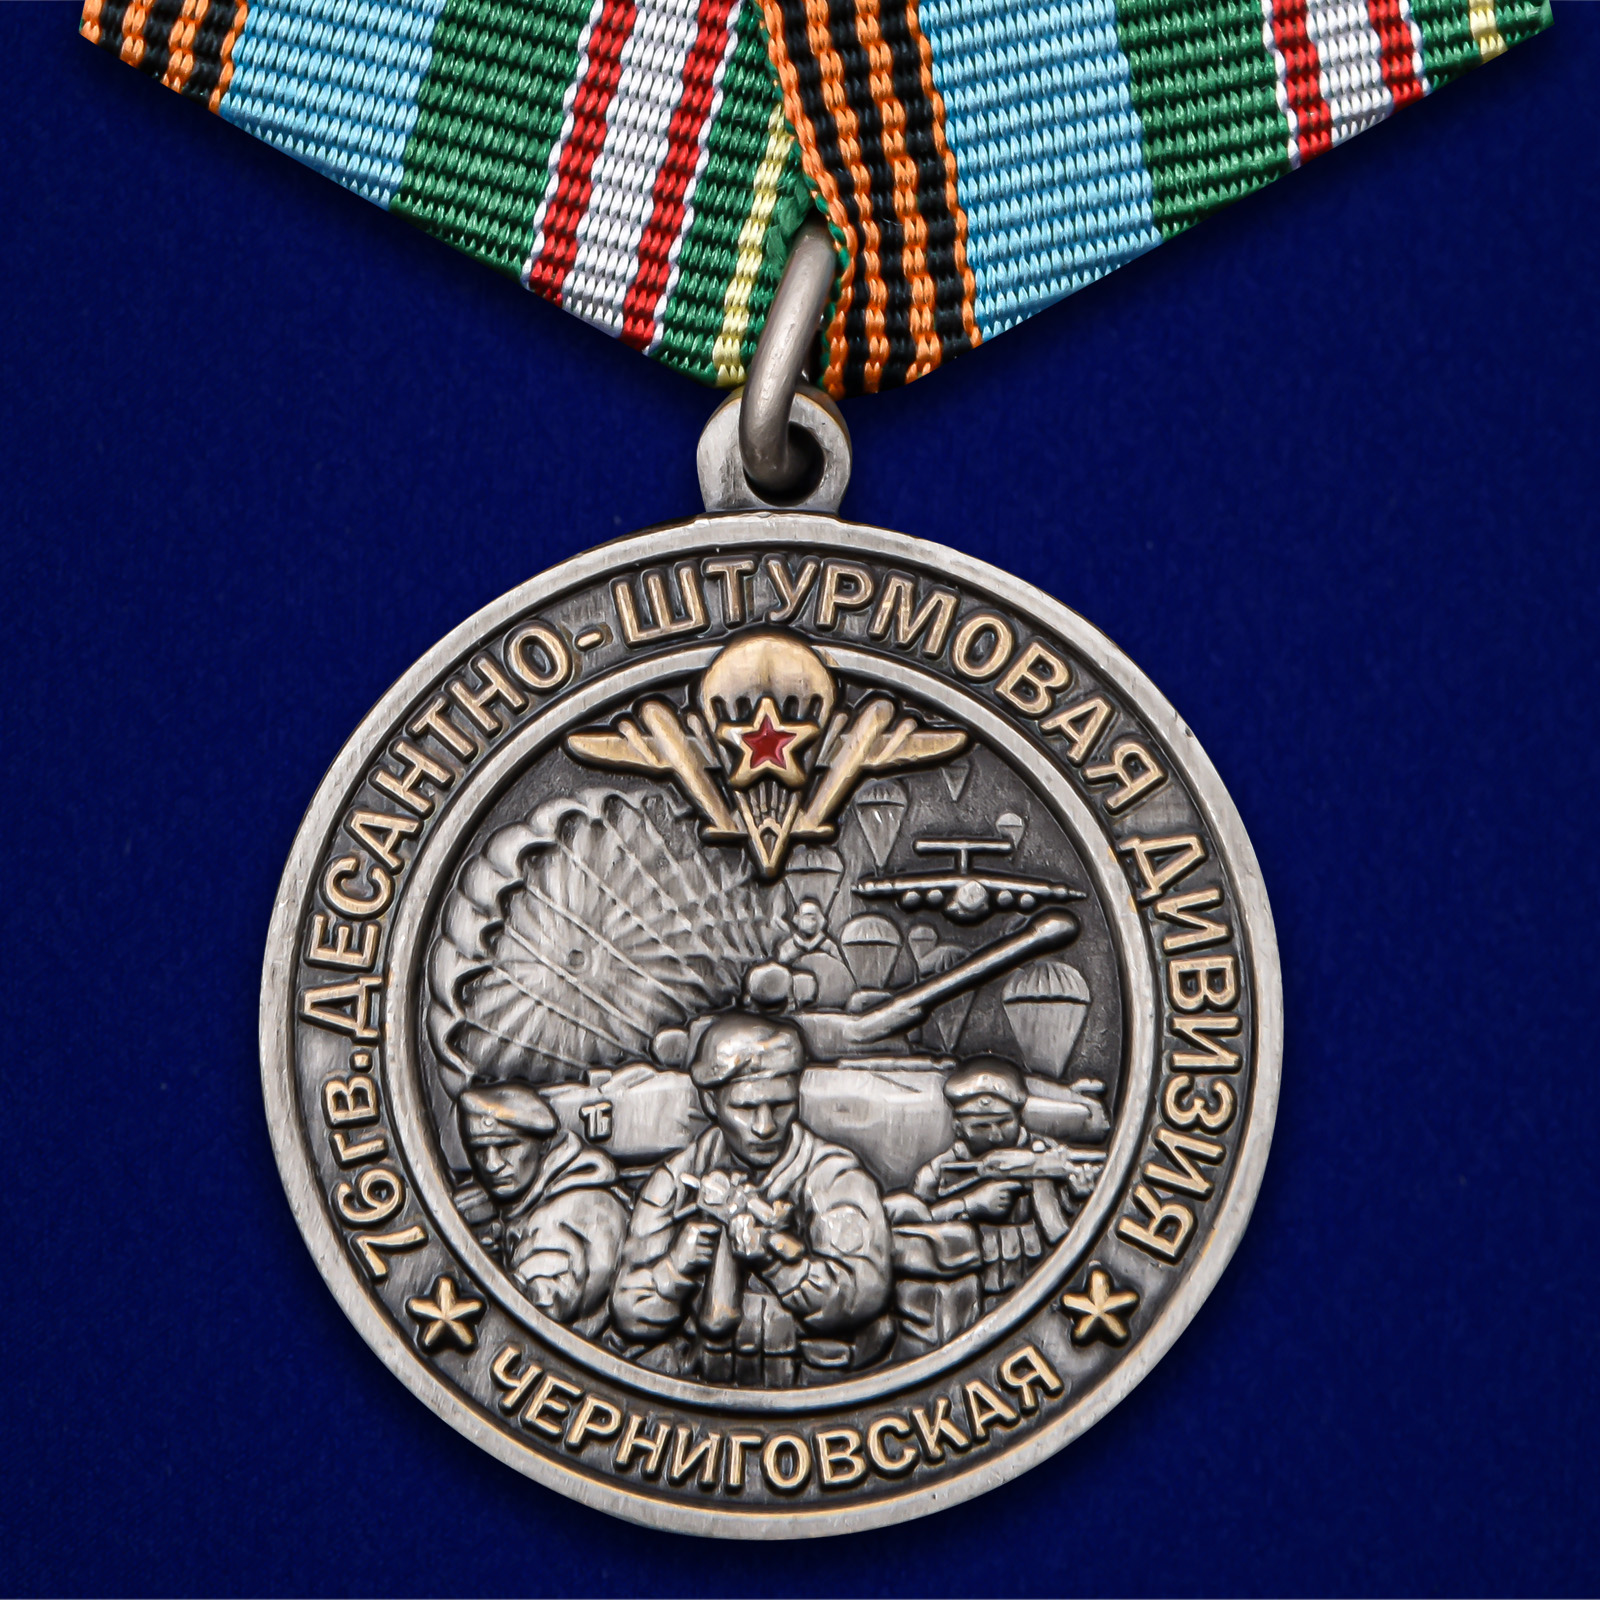 Купить медаль 76-я гв. Десантно-штурмовая дивизия на подставке в подарок